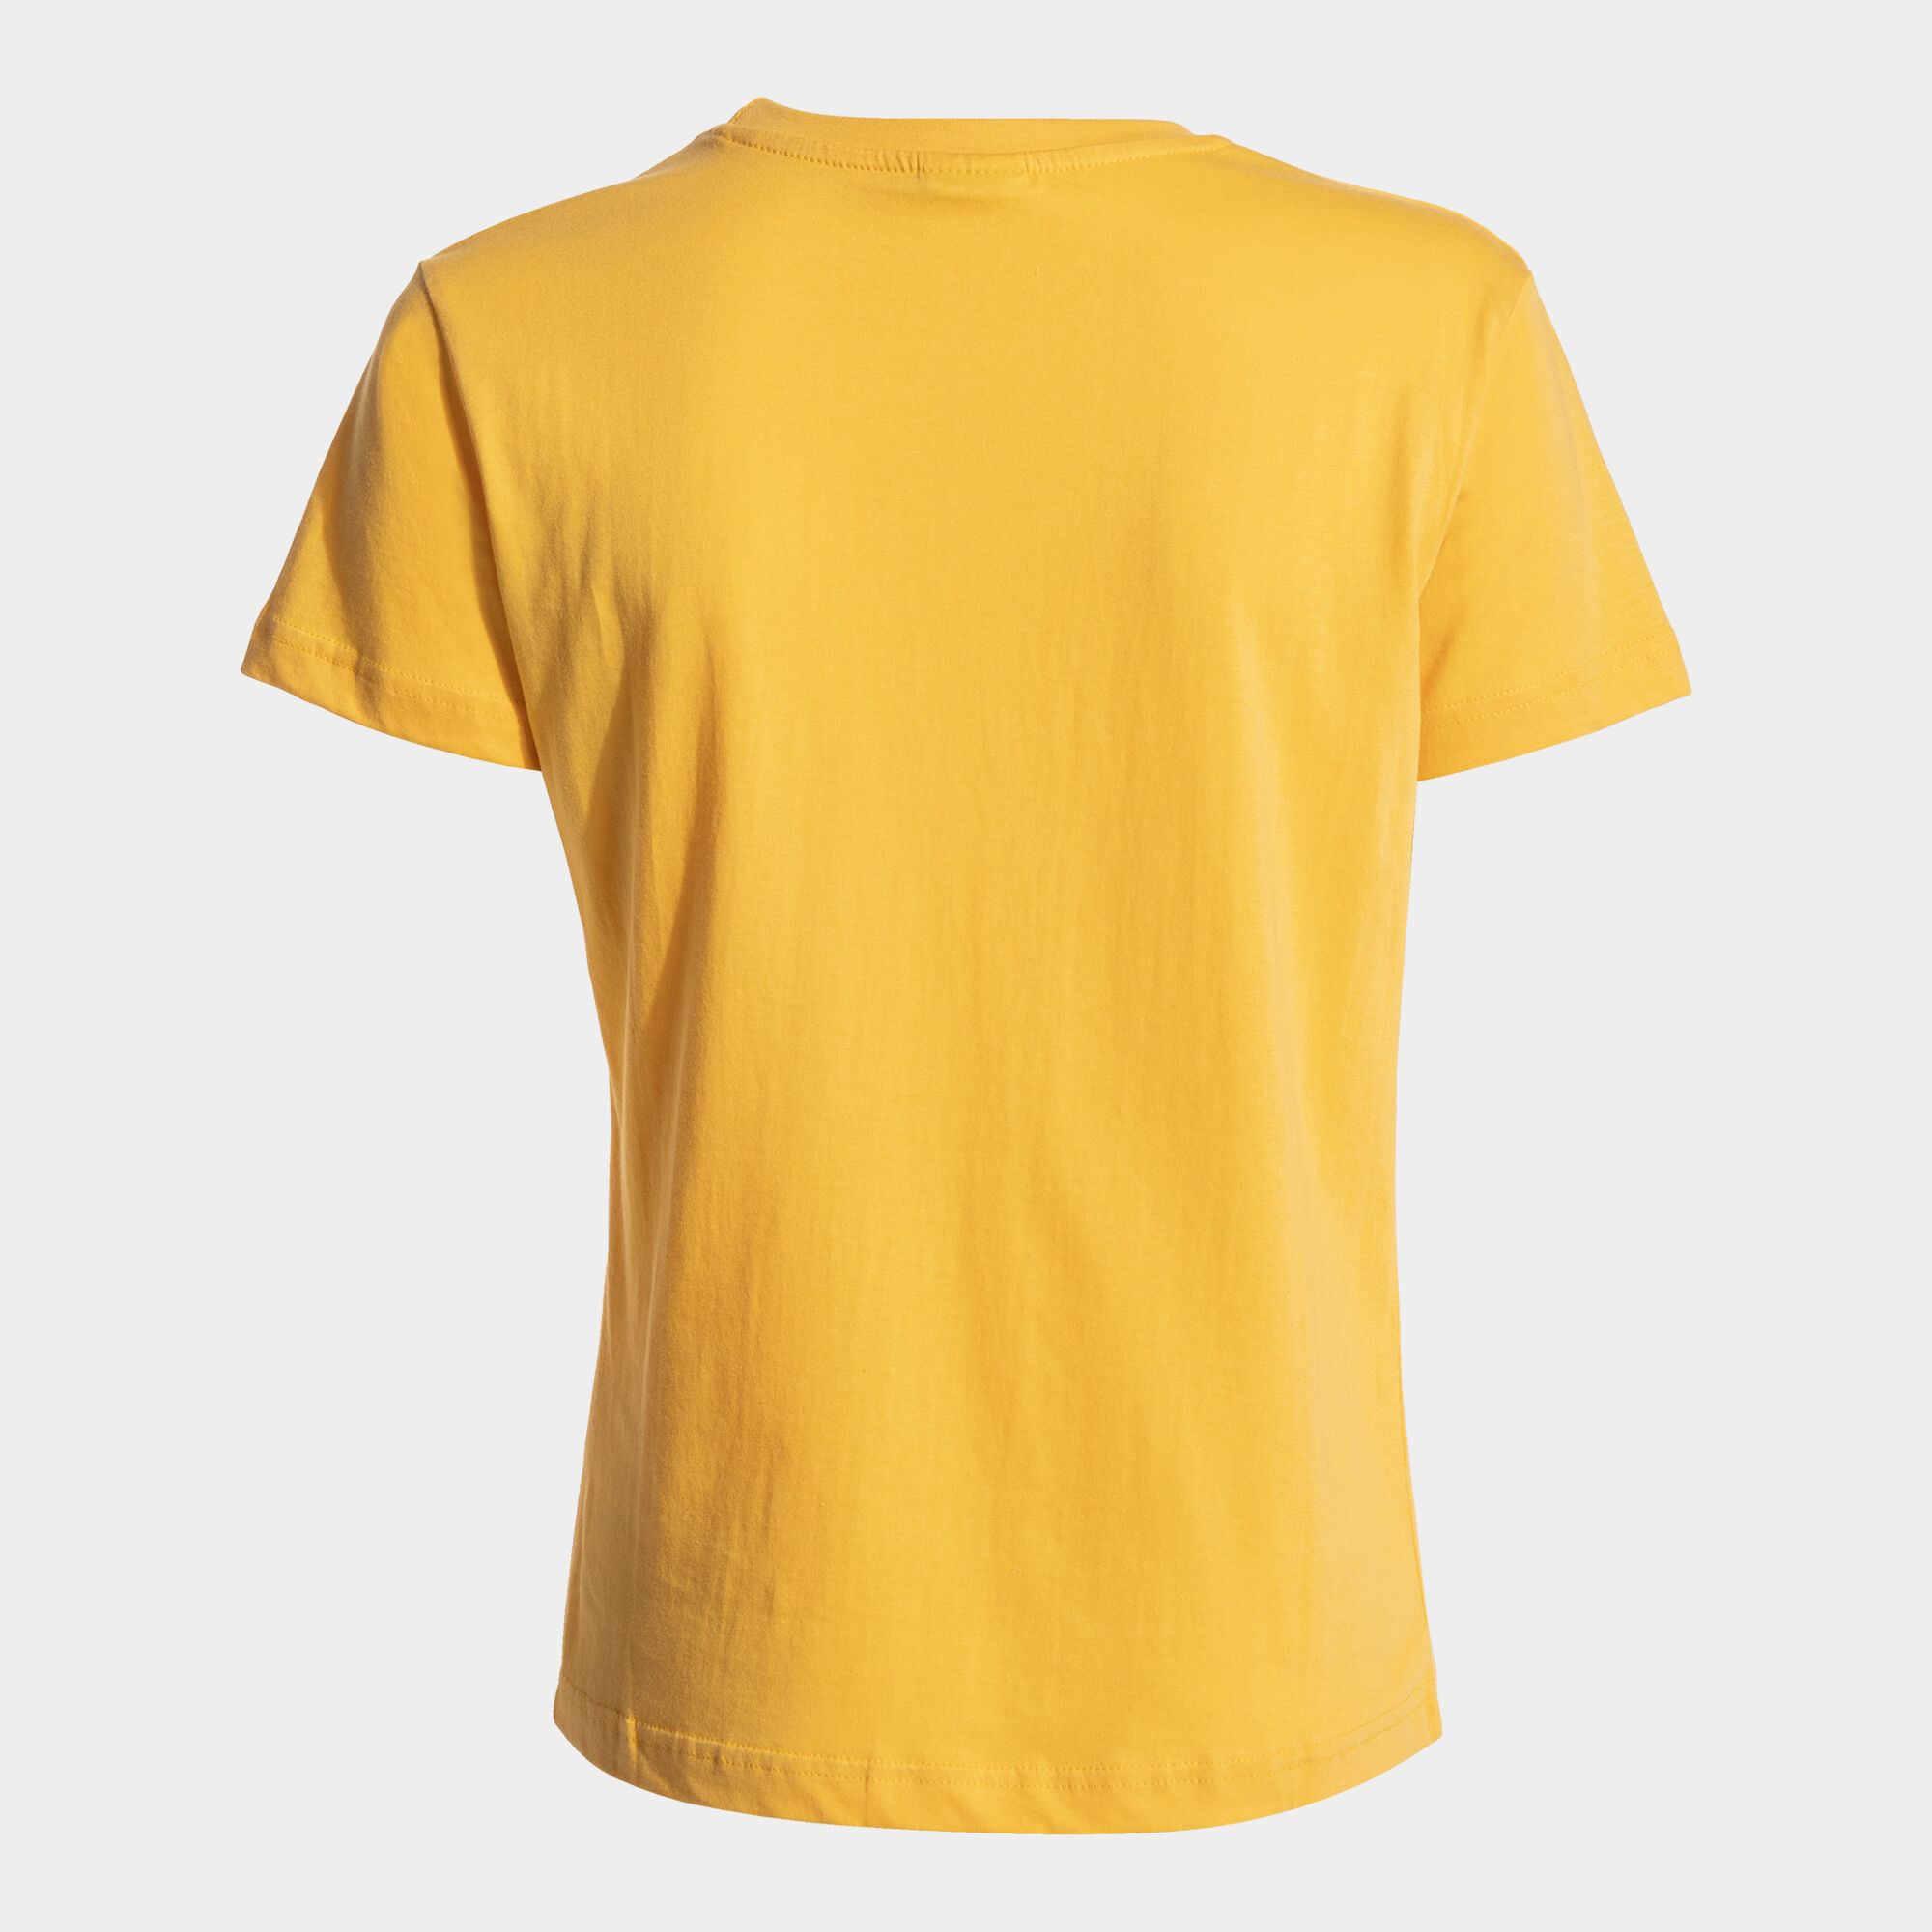 Camiseta manga corta mujer Desert naranja